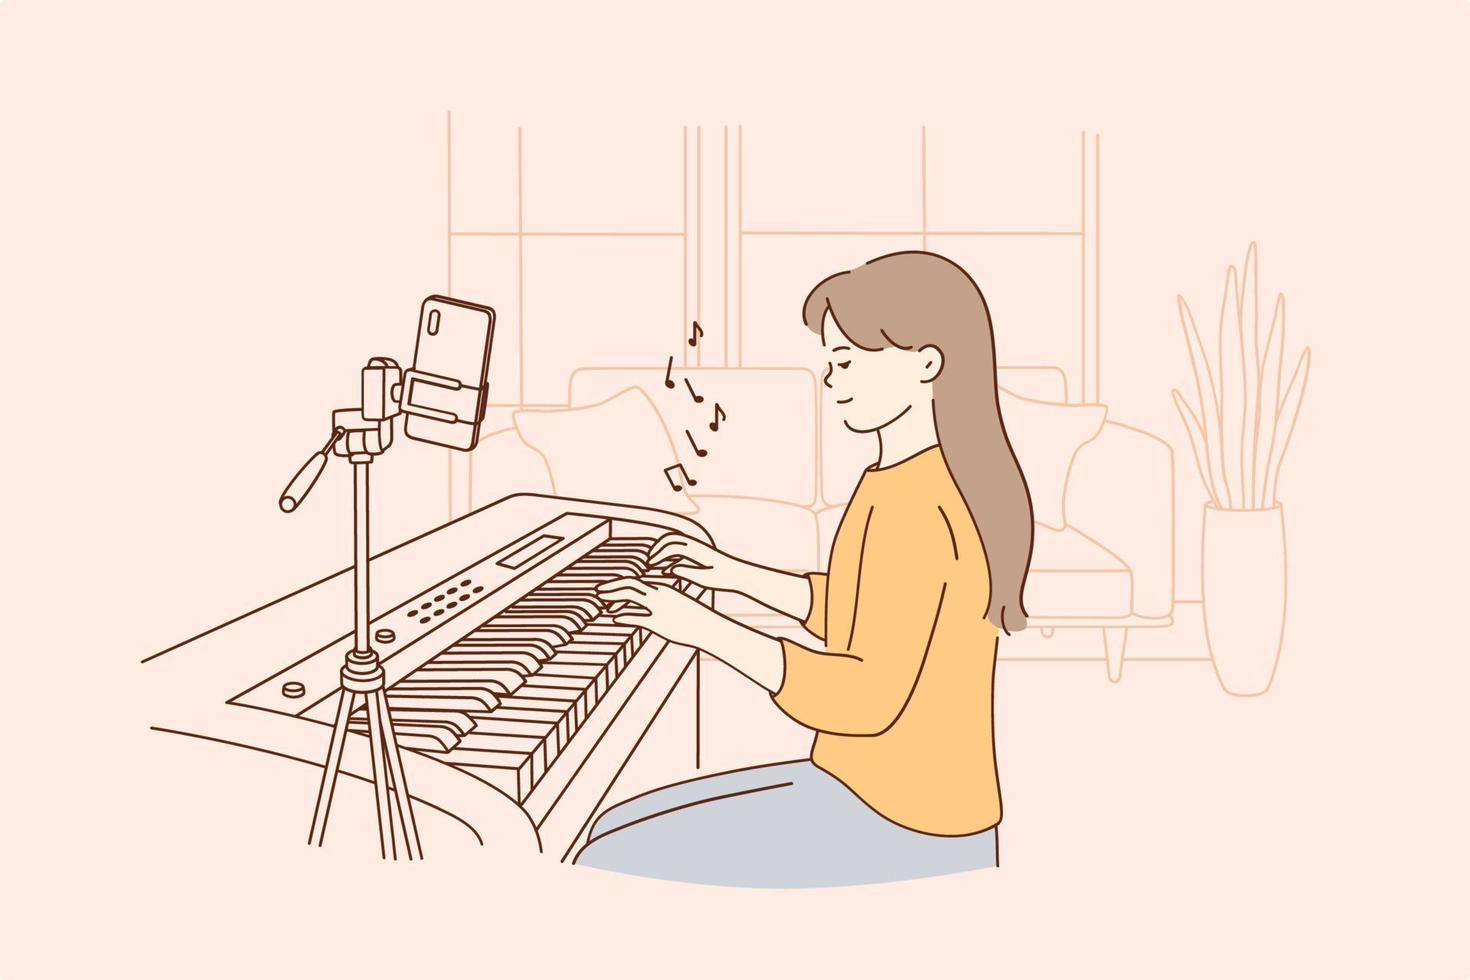 concept de cours de musique à distance à distance. petite fille positive assise jouant du piano numérique et enregistrant une vidéo sur le téléphone pendant l'apprentissage en ligne et le chat vidéo depuis la maison illustration vectorielle vecteur